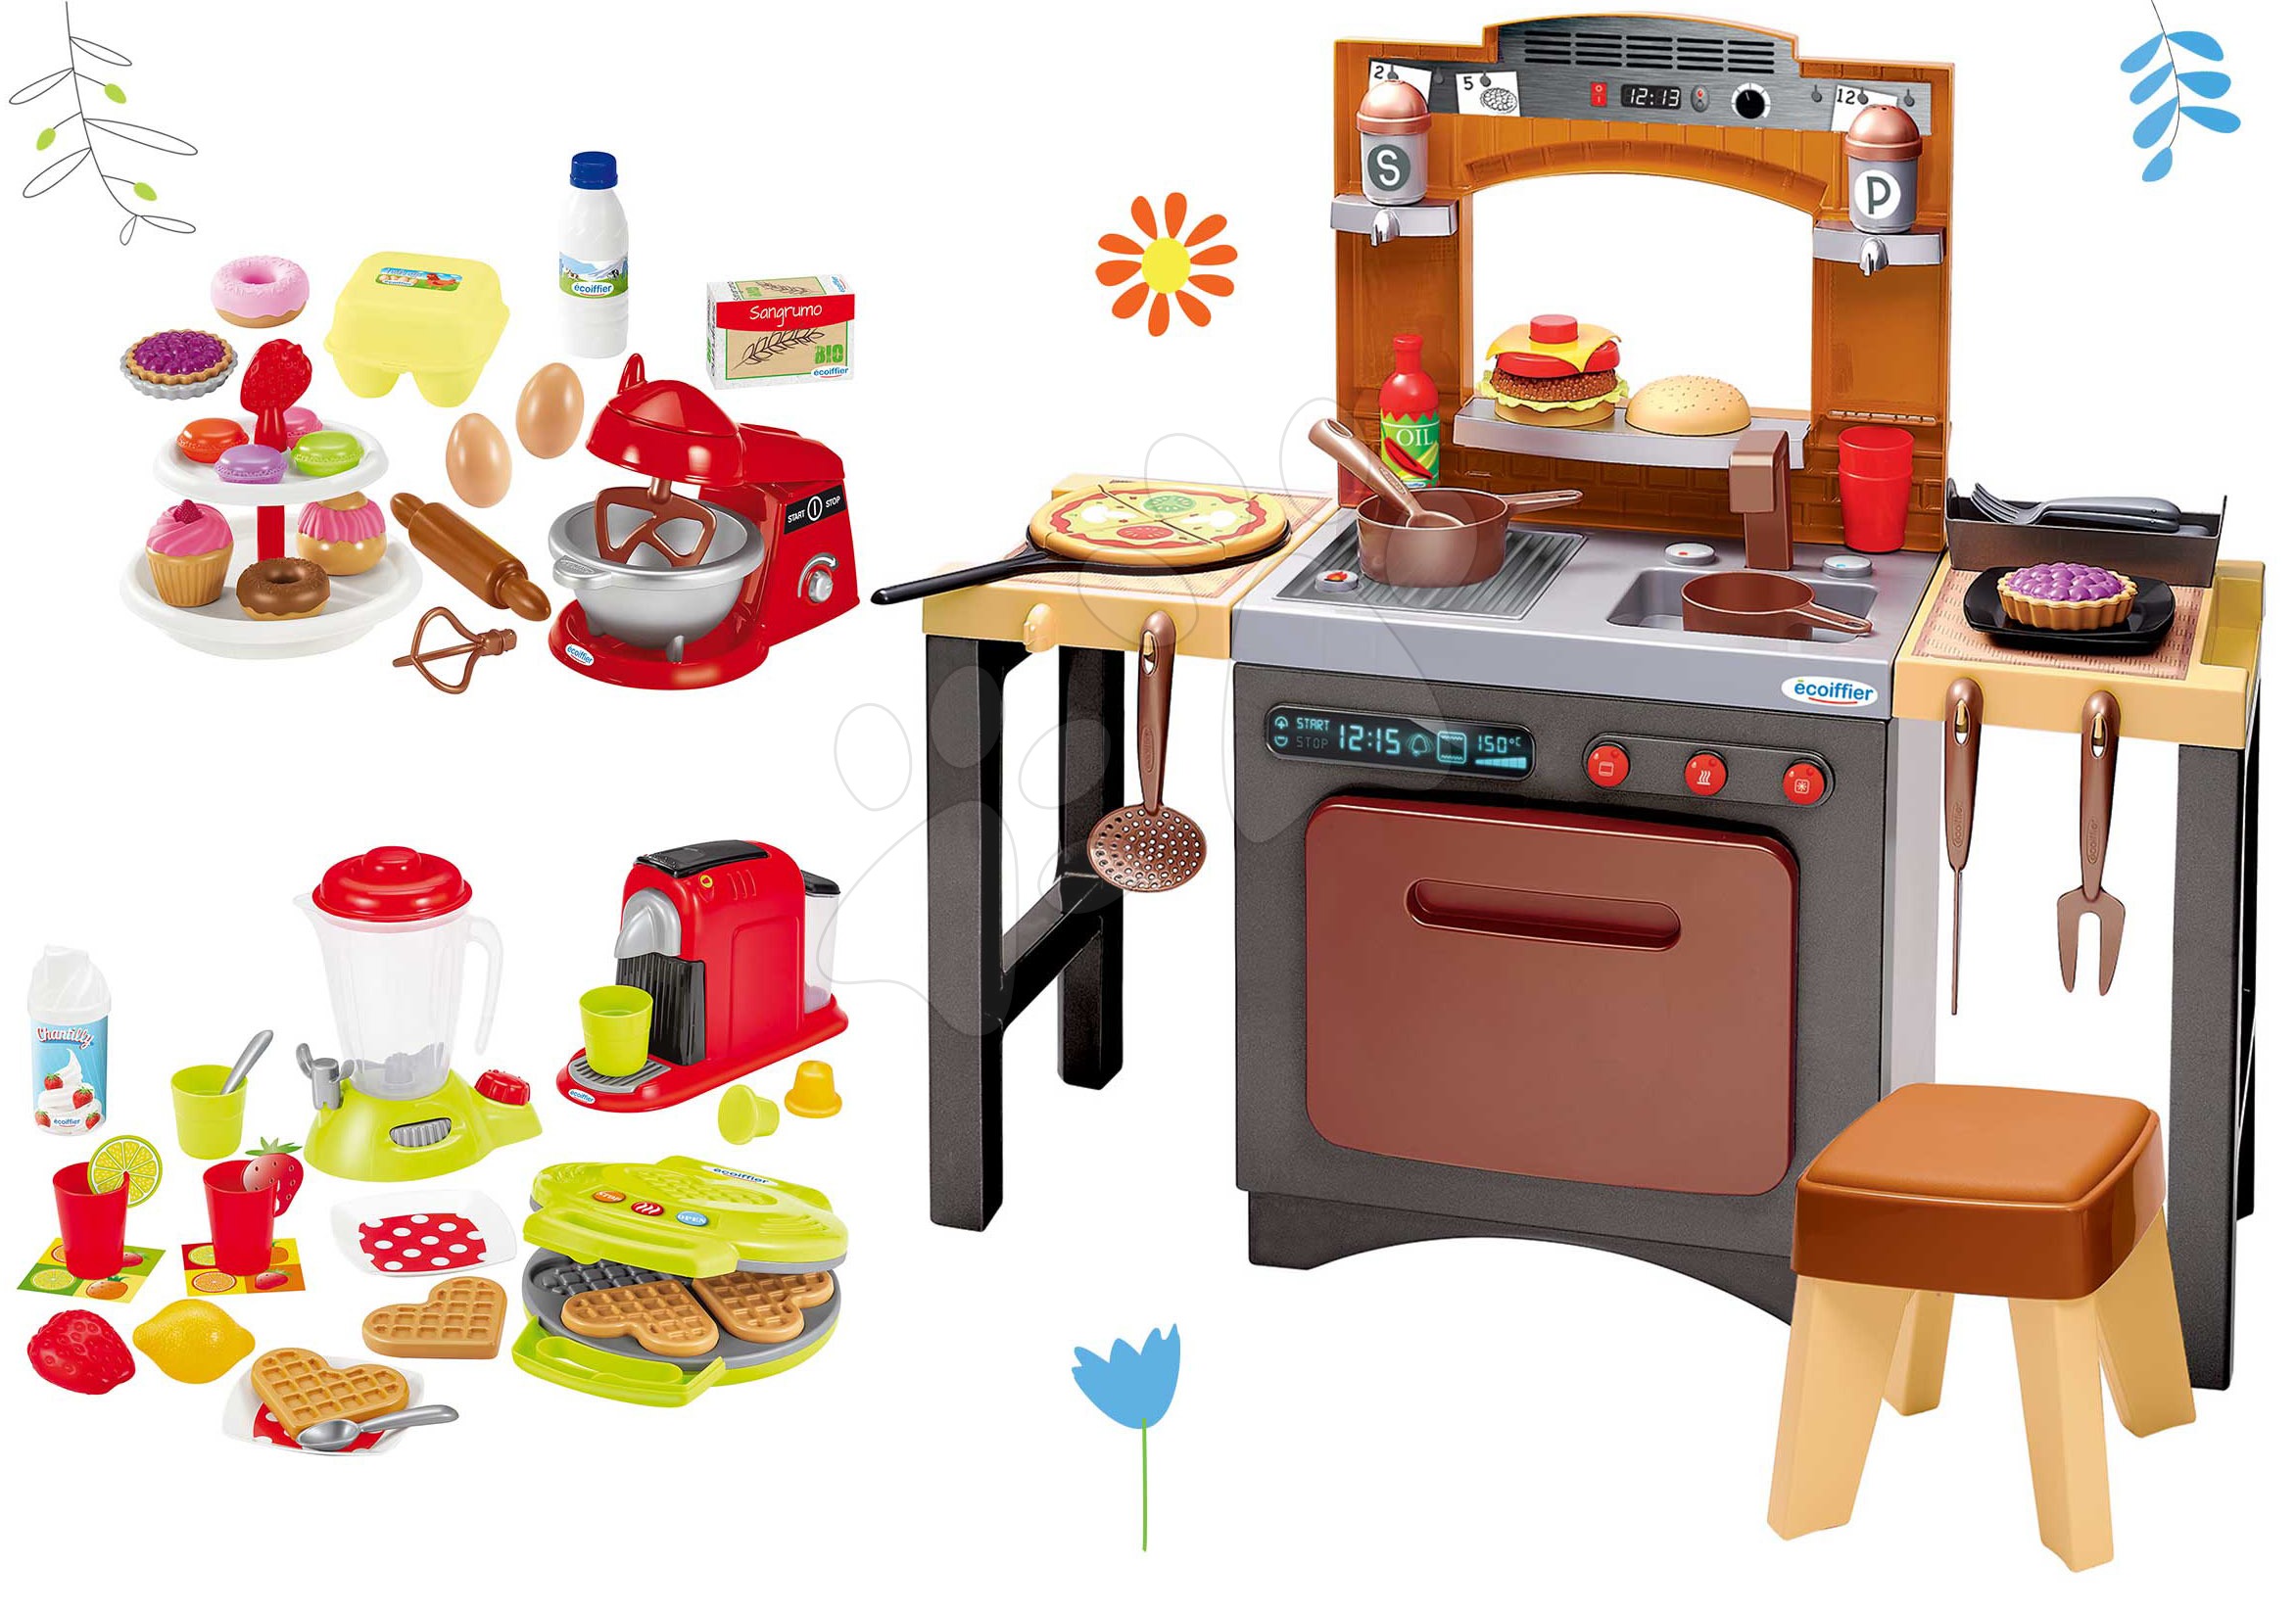 Egyszerű játékkonyhák - Szett játékkonyha pizzával Pizzeria Écoiffier körbejárható gofrisütővel konyhai robotgéppel és kiegészitőkkel